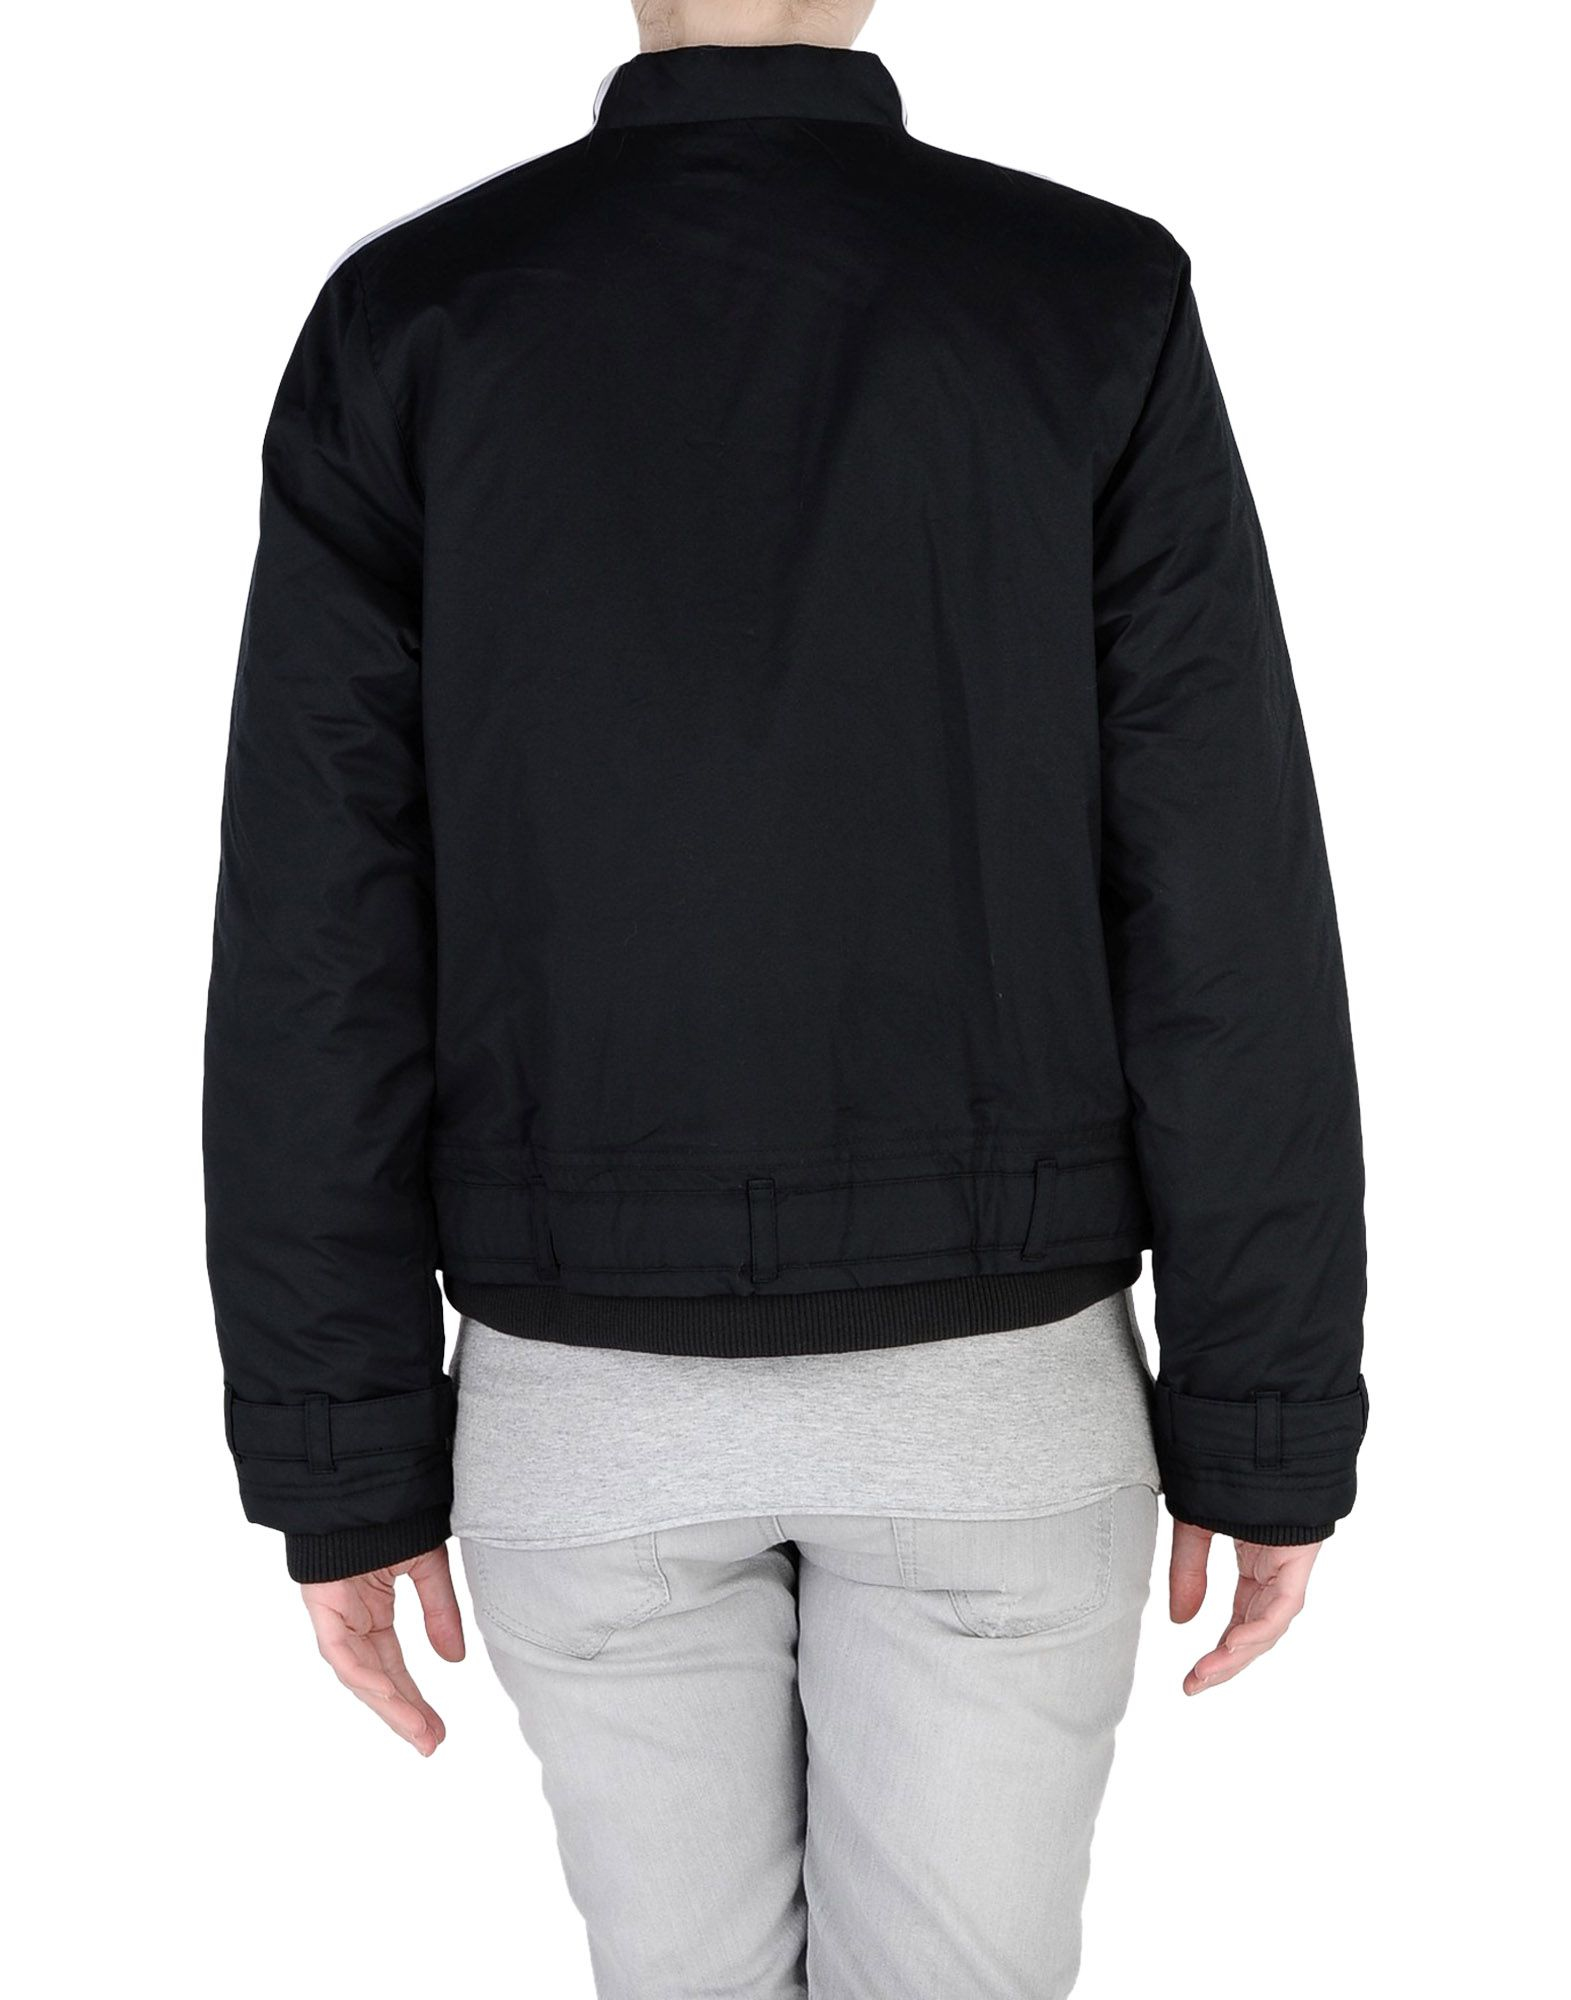 Adidas Jacket in Black | Lyst